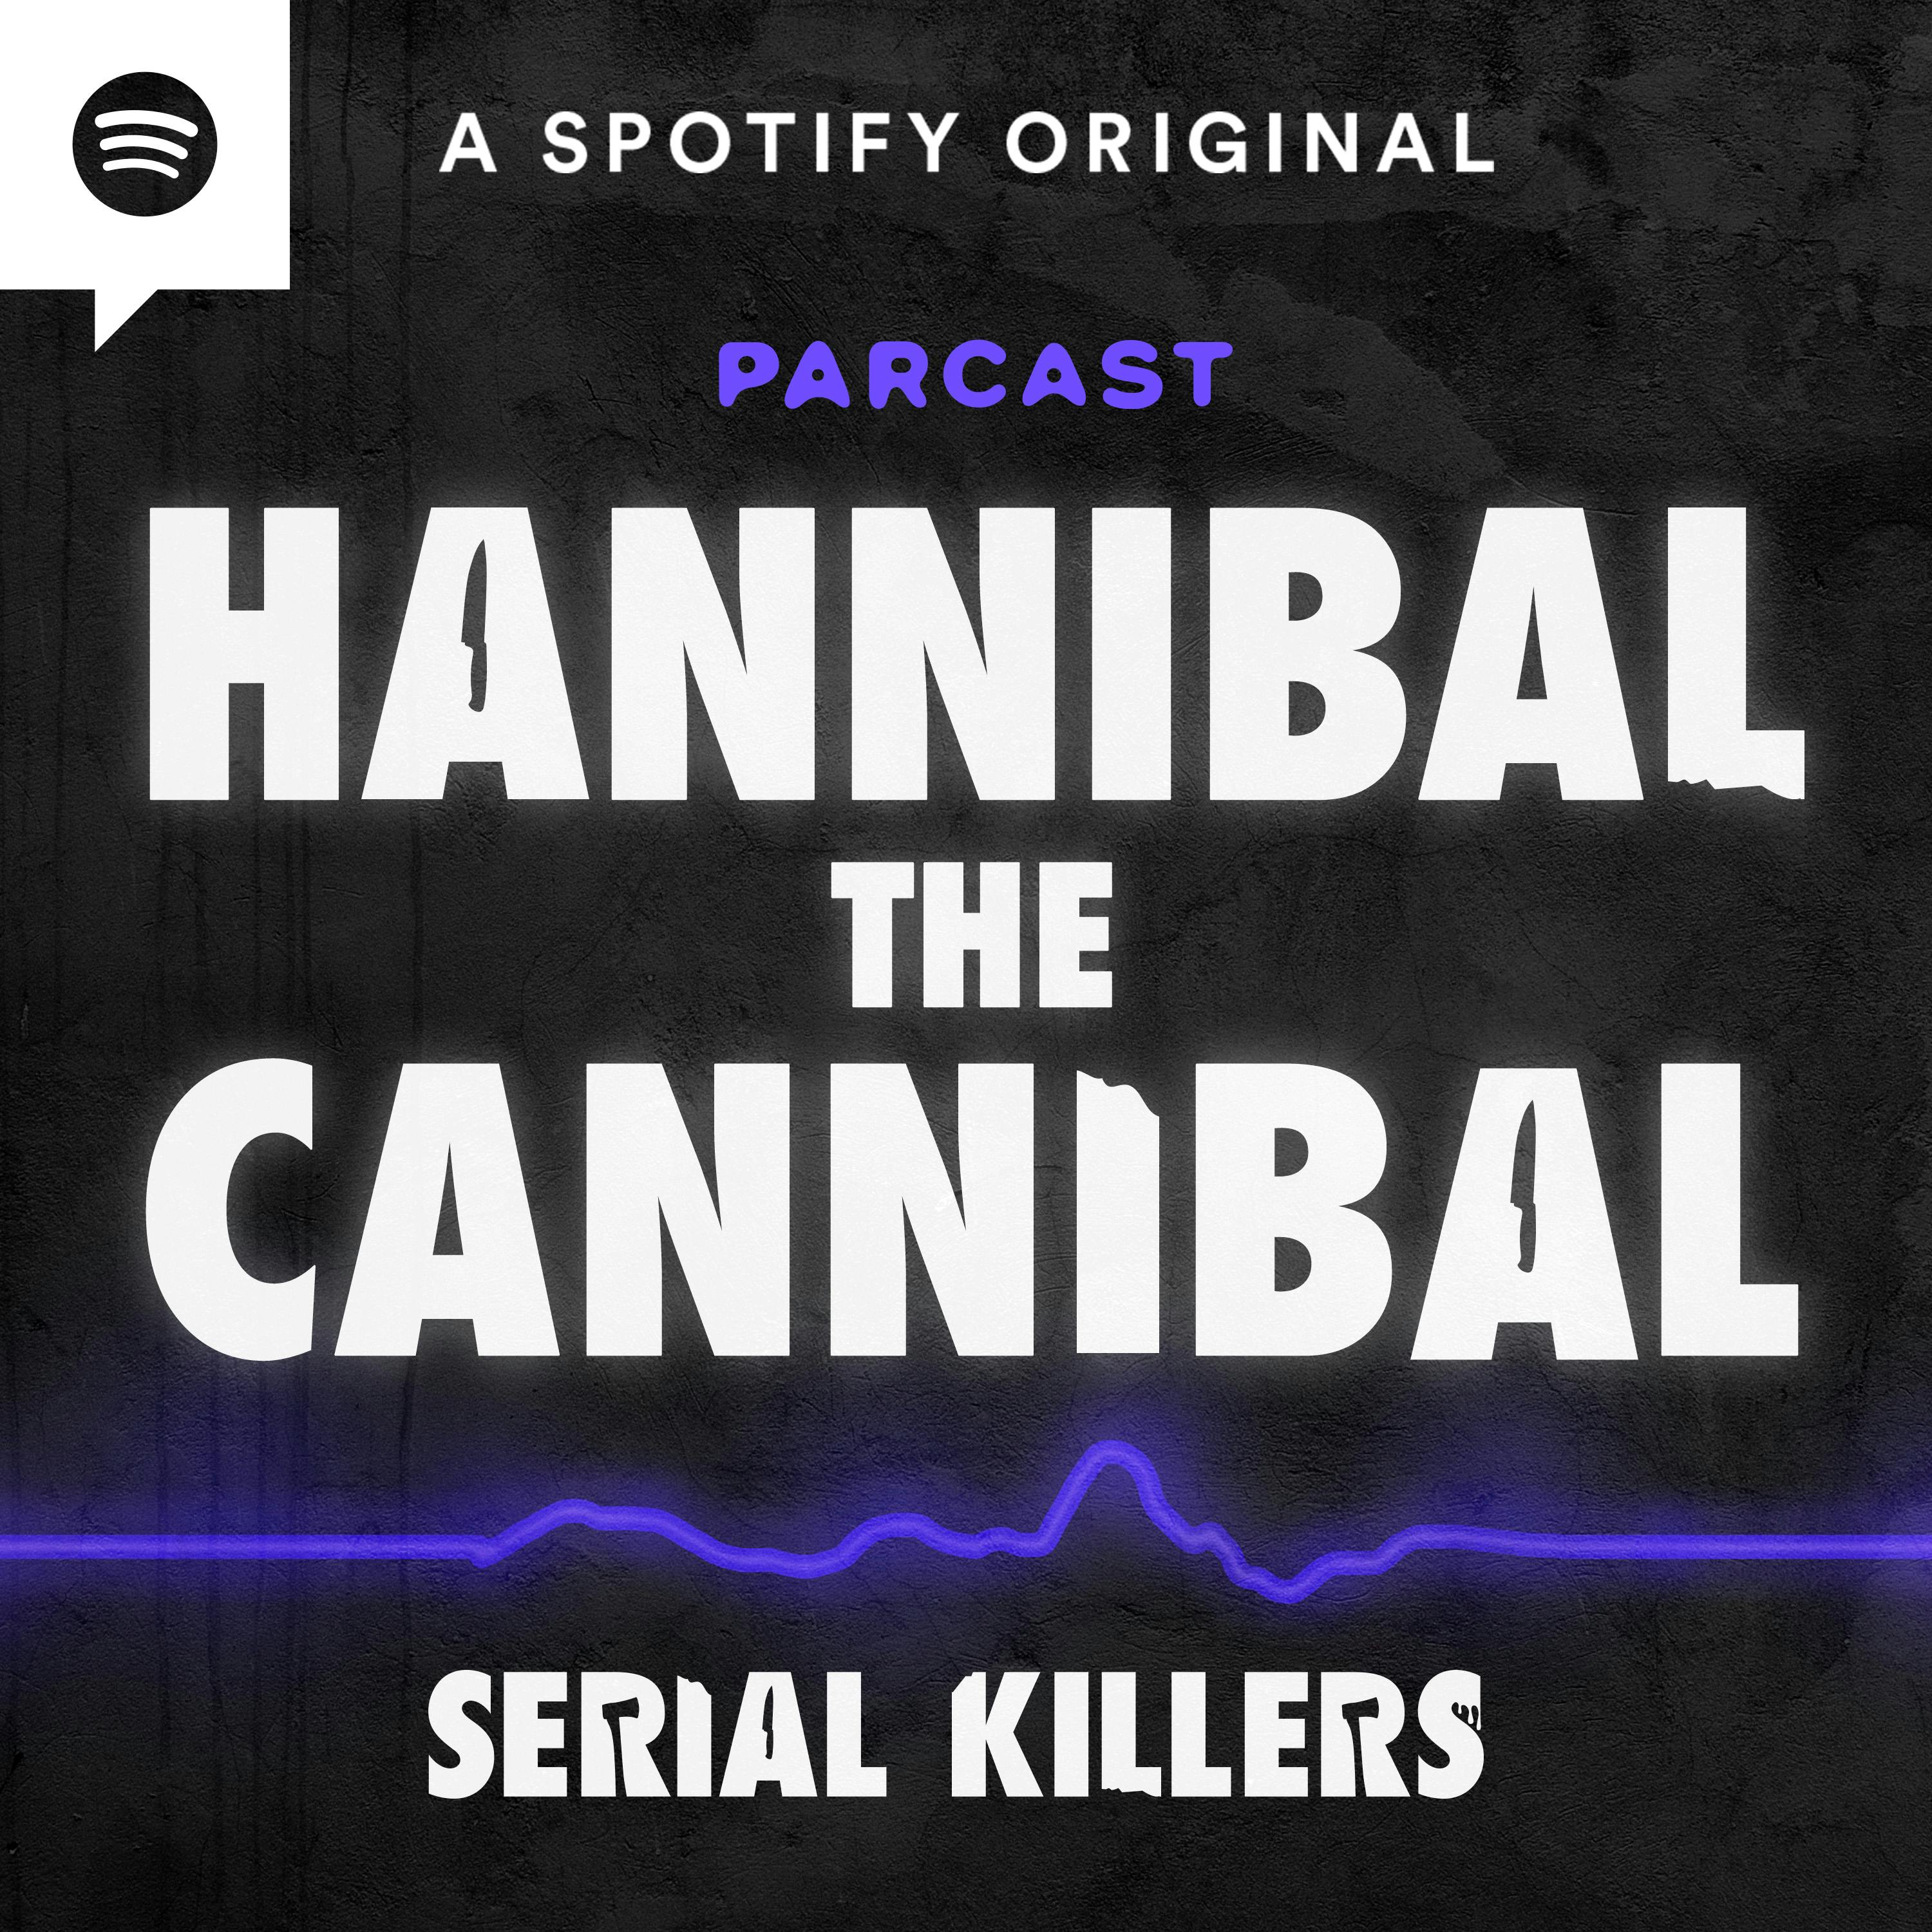 “Hannibal the Cannibal” Robert John Maudsley Pt. 1